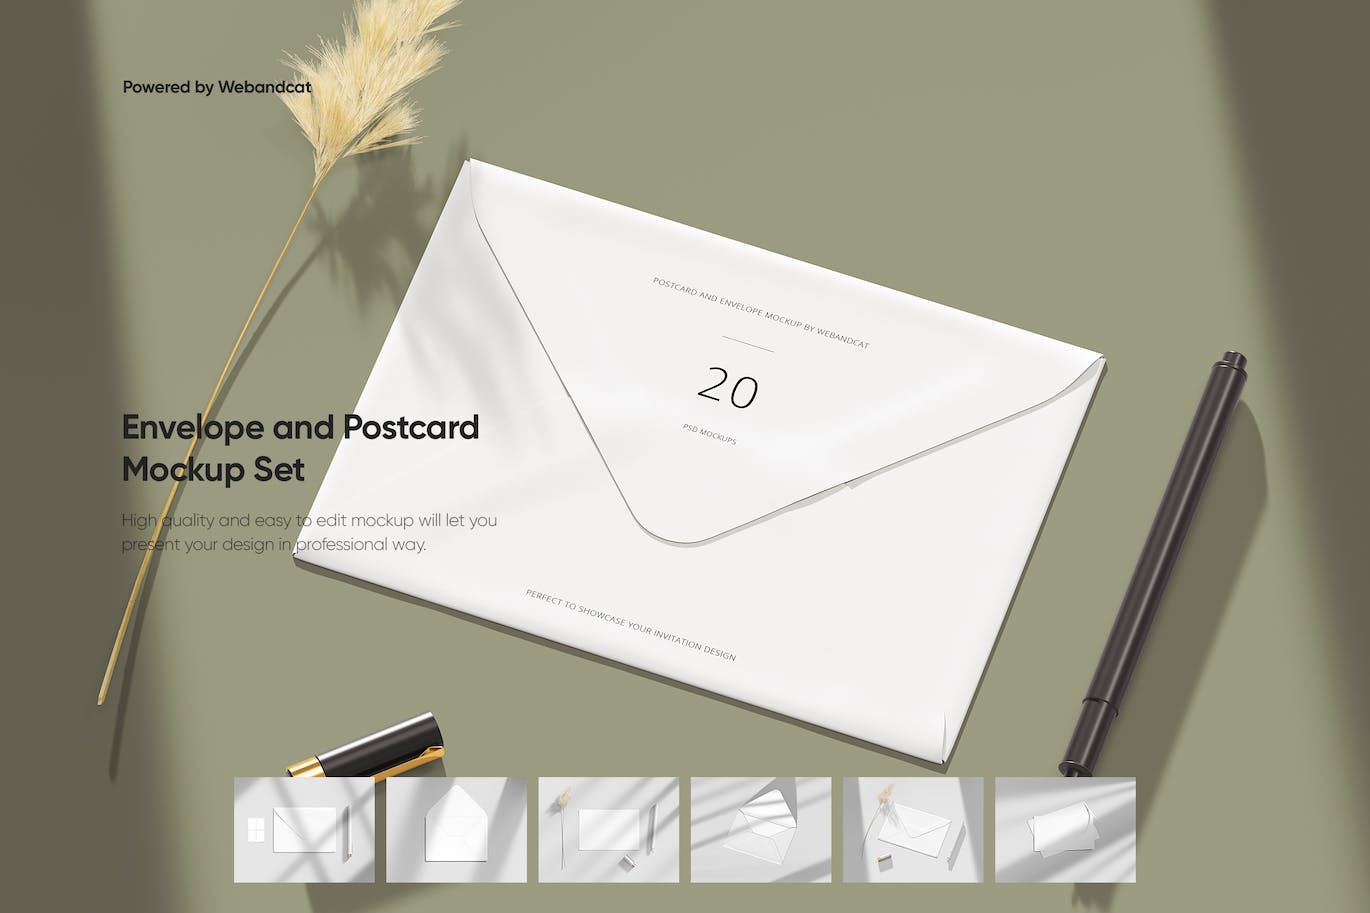 信封和明信片样机模型 Envelope and Postcard Mockup Set